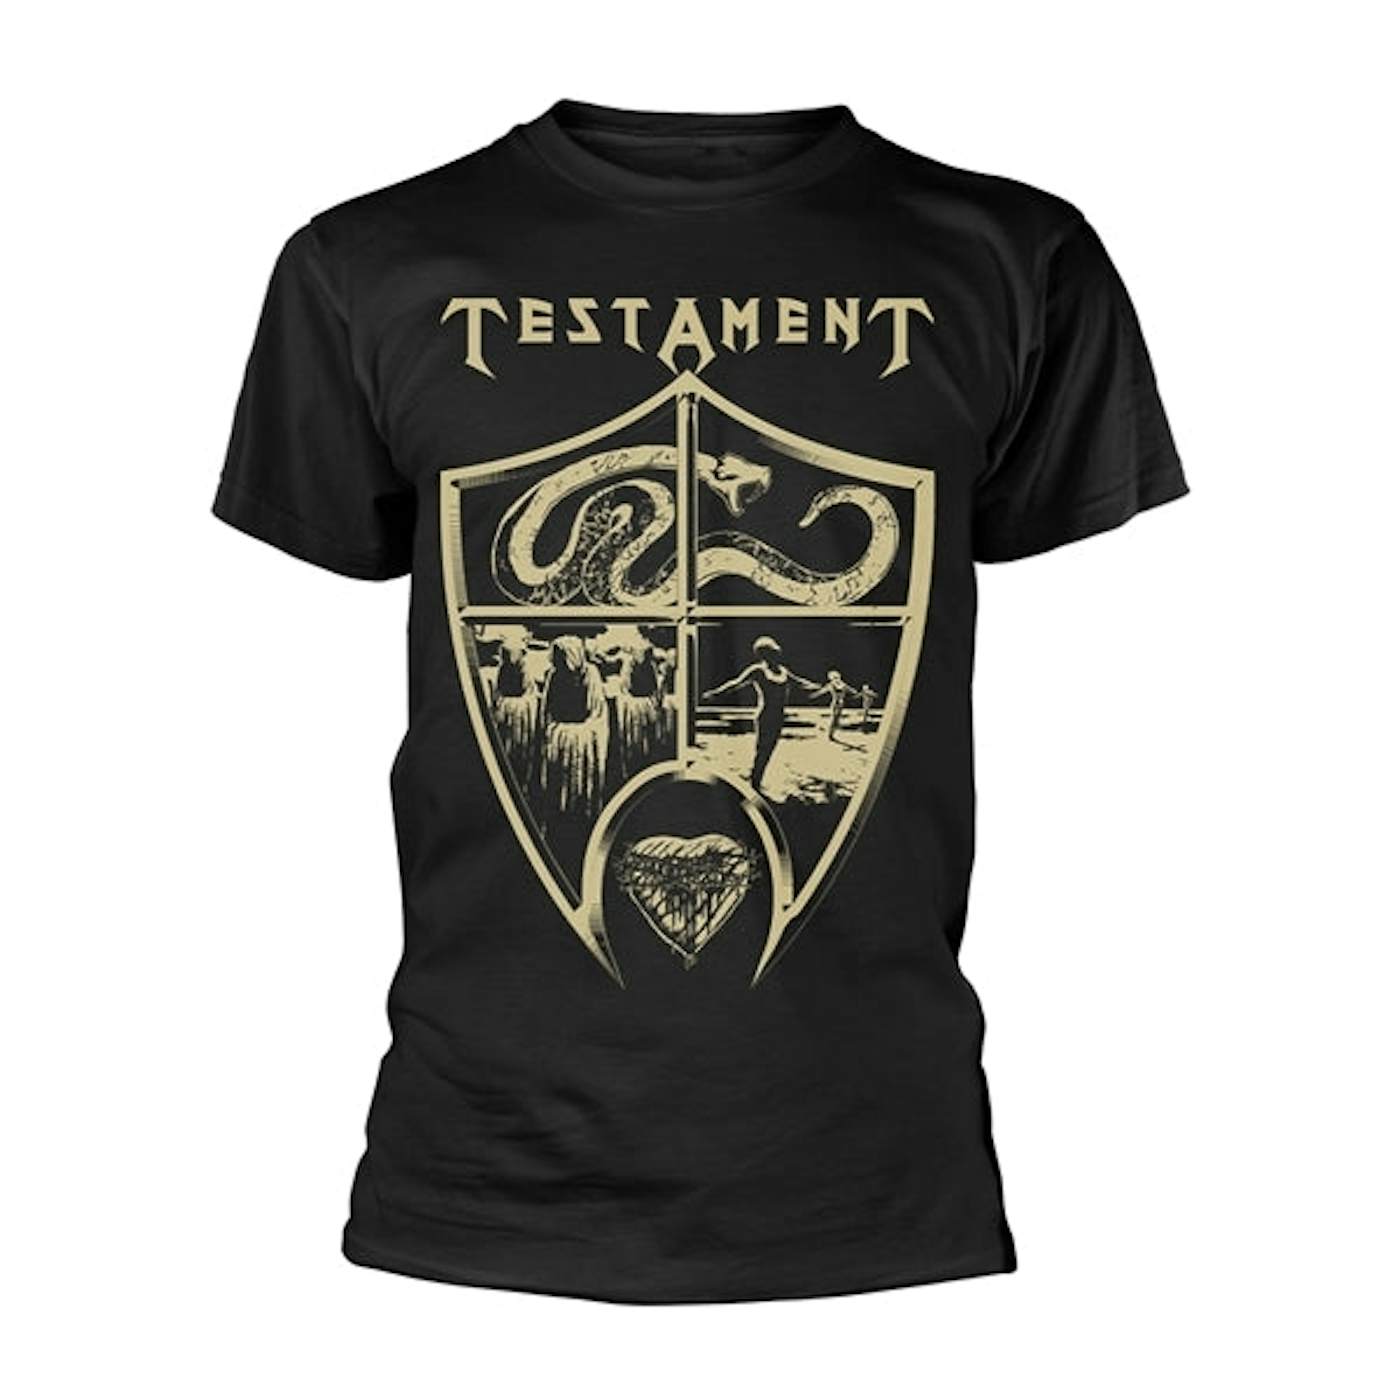 Testament T Shirt - Crest Shield